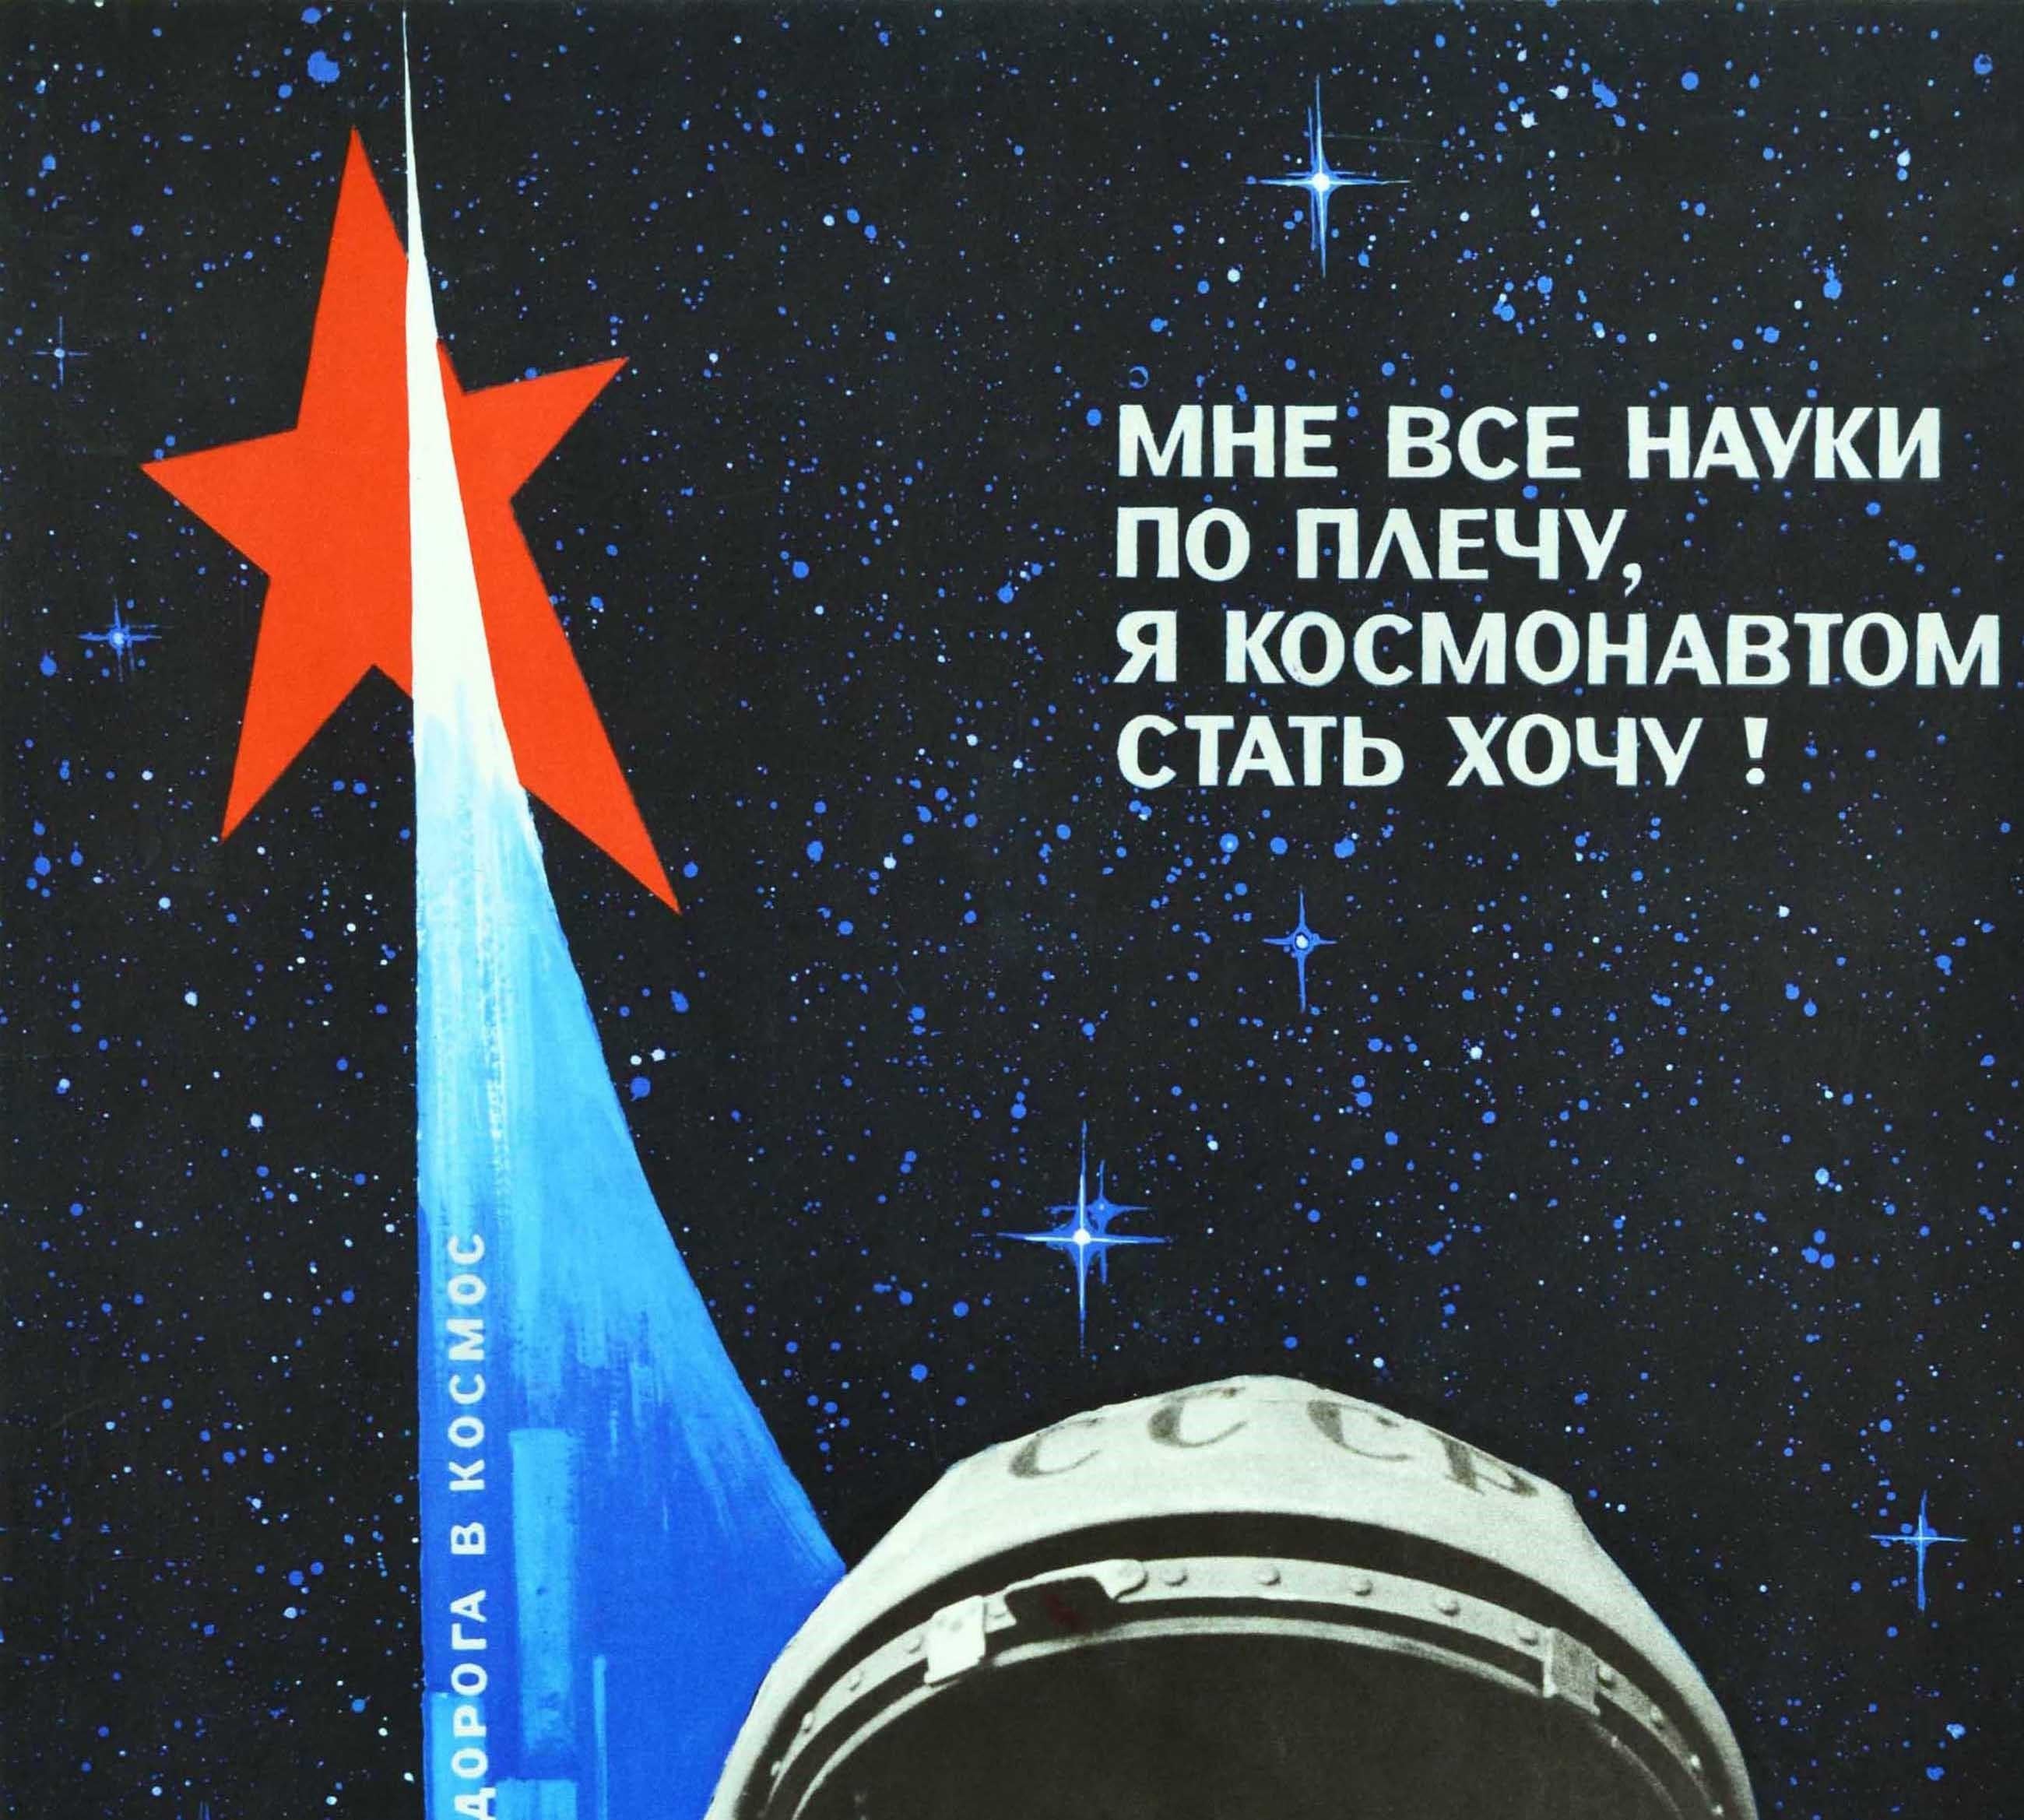 Affiche rétro originale de l'école soviétique, garçon cosmonaute, éducation scientifique, URSS - Print de Galkin